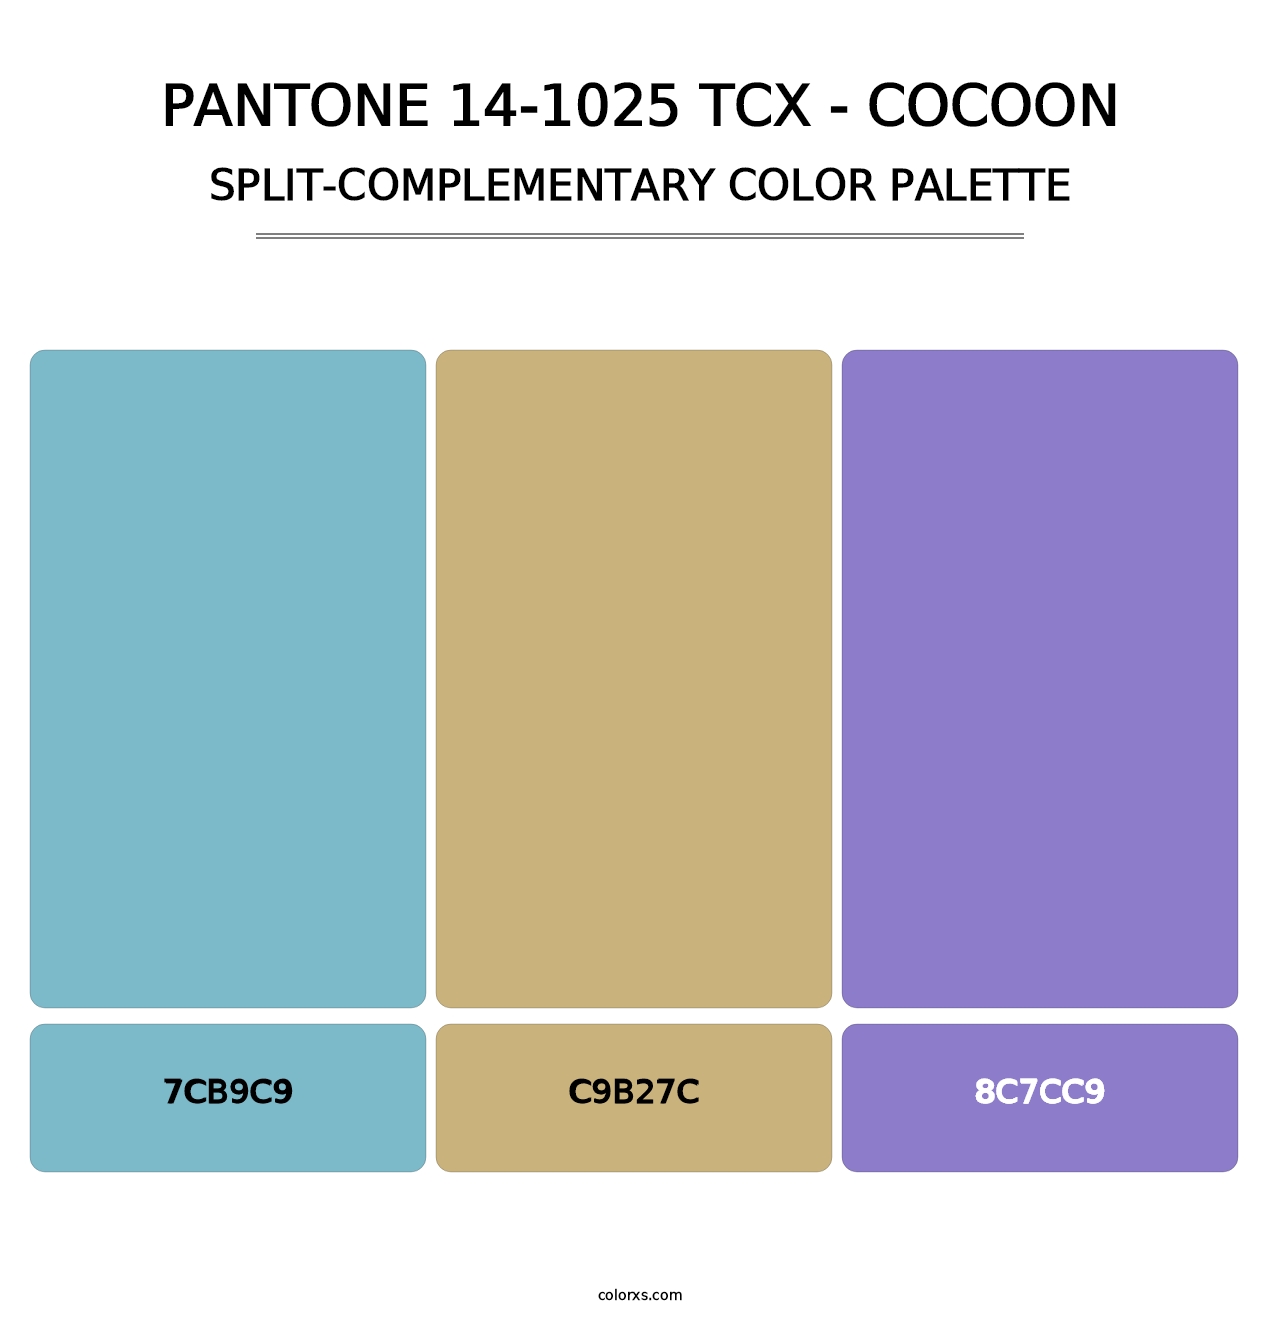 PANTONE 14-1025 TCX - Cocoon - Split-Complementary Color Palette